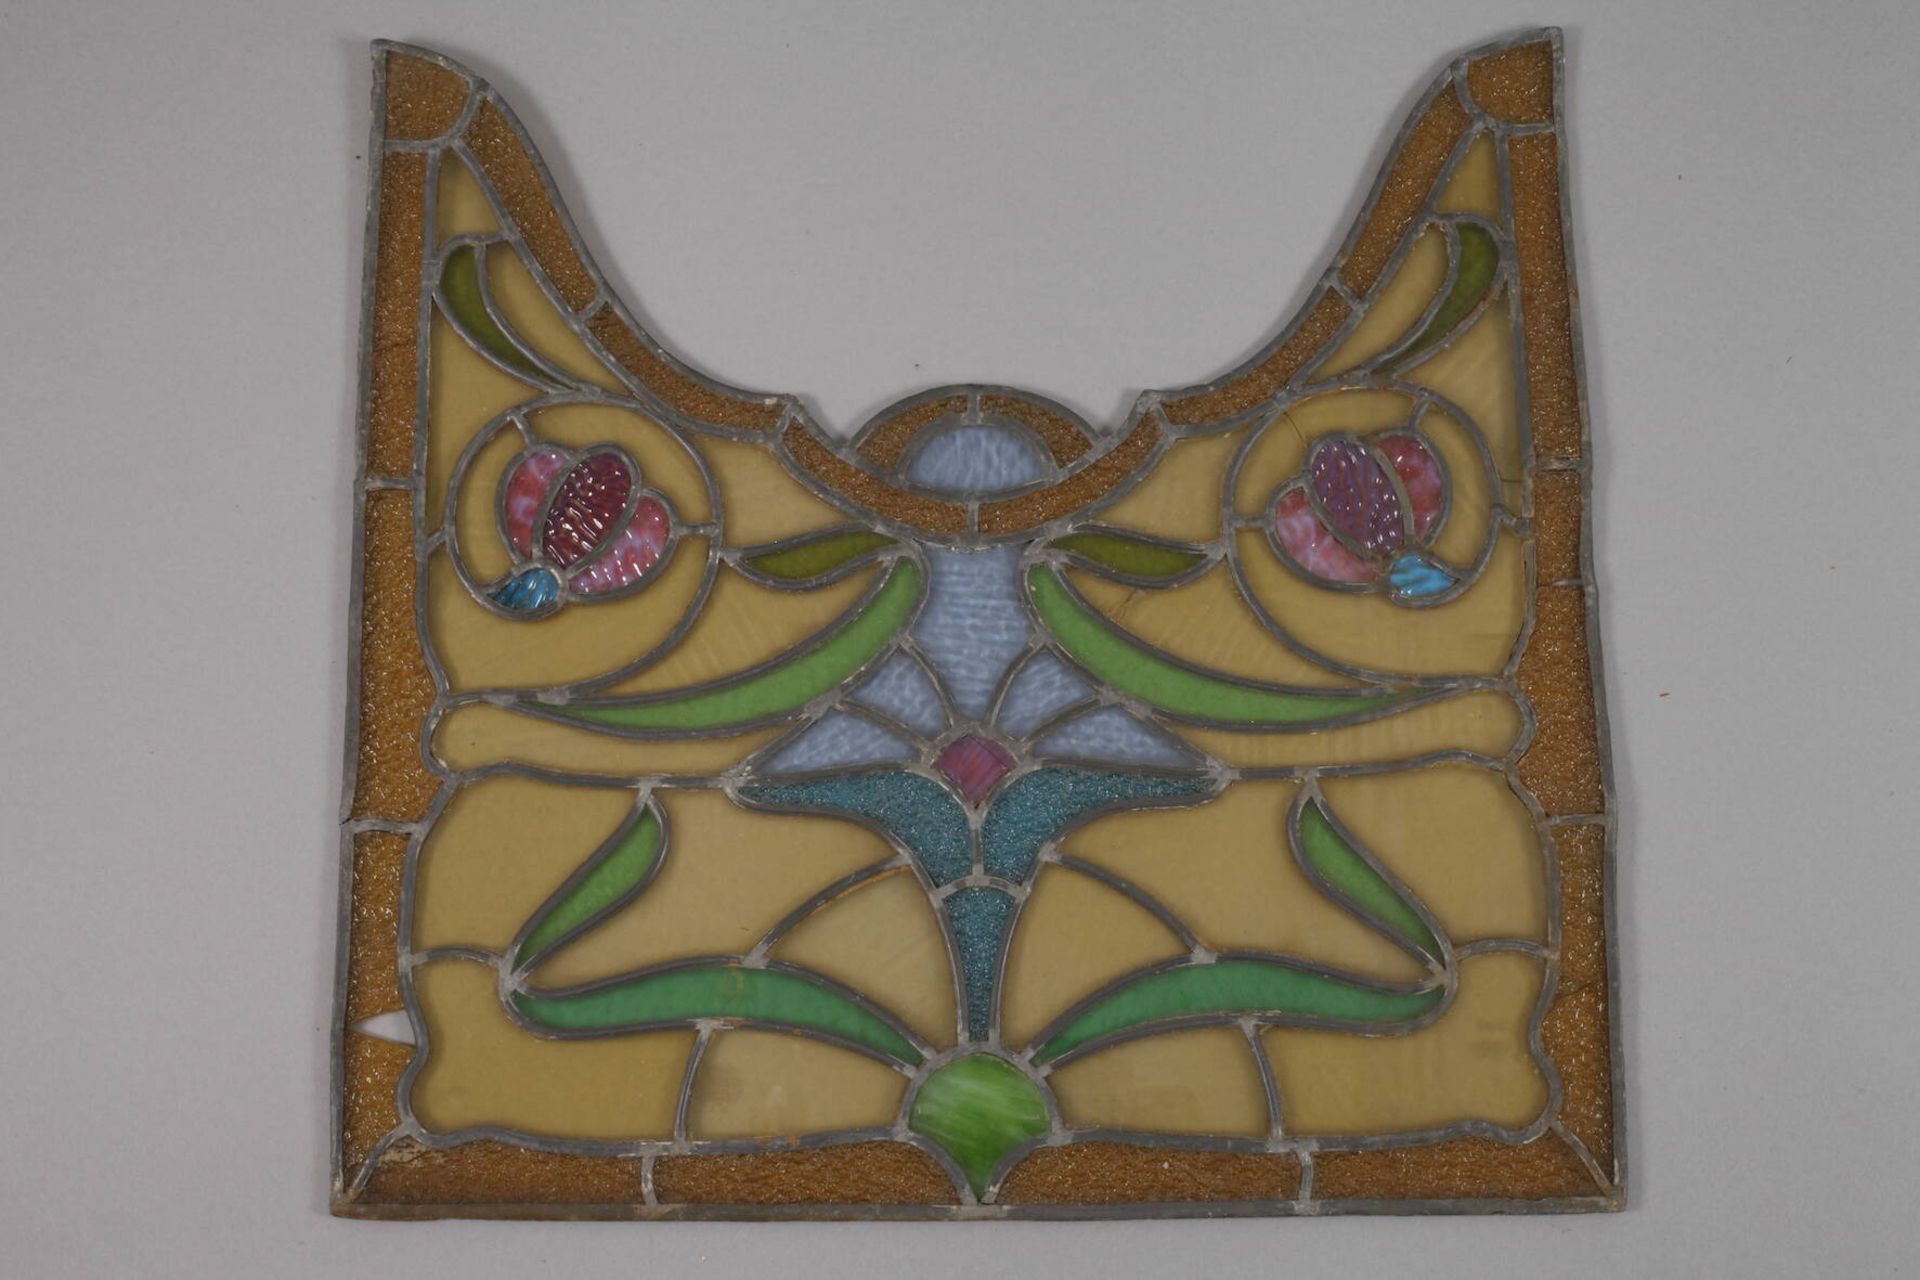 Bleiglasfensterum 1900, florale Motive aus Farb- und Ornamentglas, dreiteilig, ohne Rahmen, rest. - Bild 2 aus 4